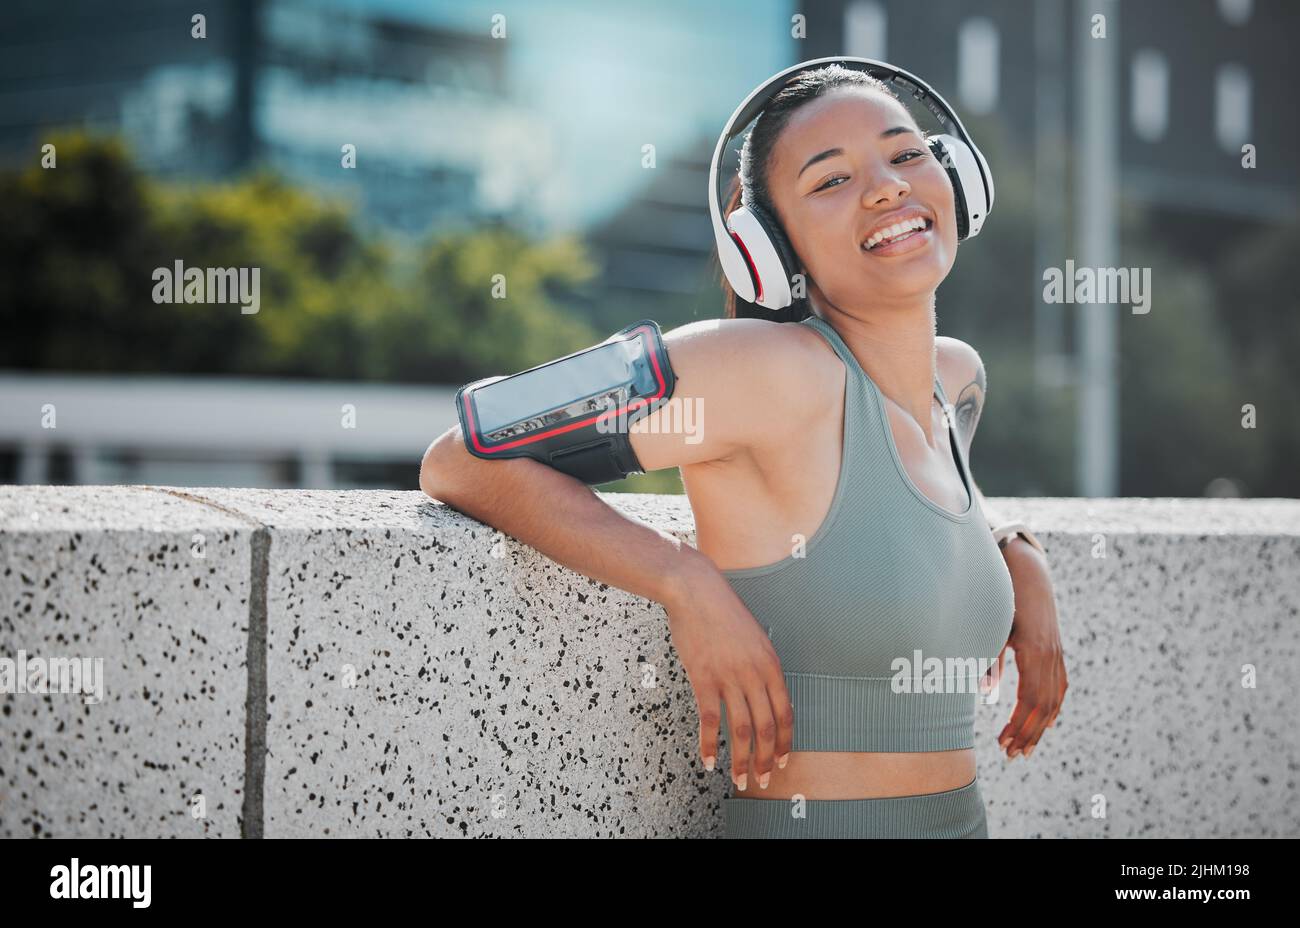 Porträt einer jungen Fitness-Frau mit gemischtem Rennen, die glücklich und lächelnd aussieht, während sie Kopfhörer trägt und Musik von einem angeschnallten Mobiltelefon hört Stockfoto